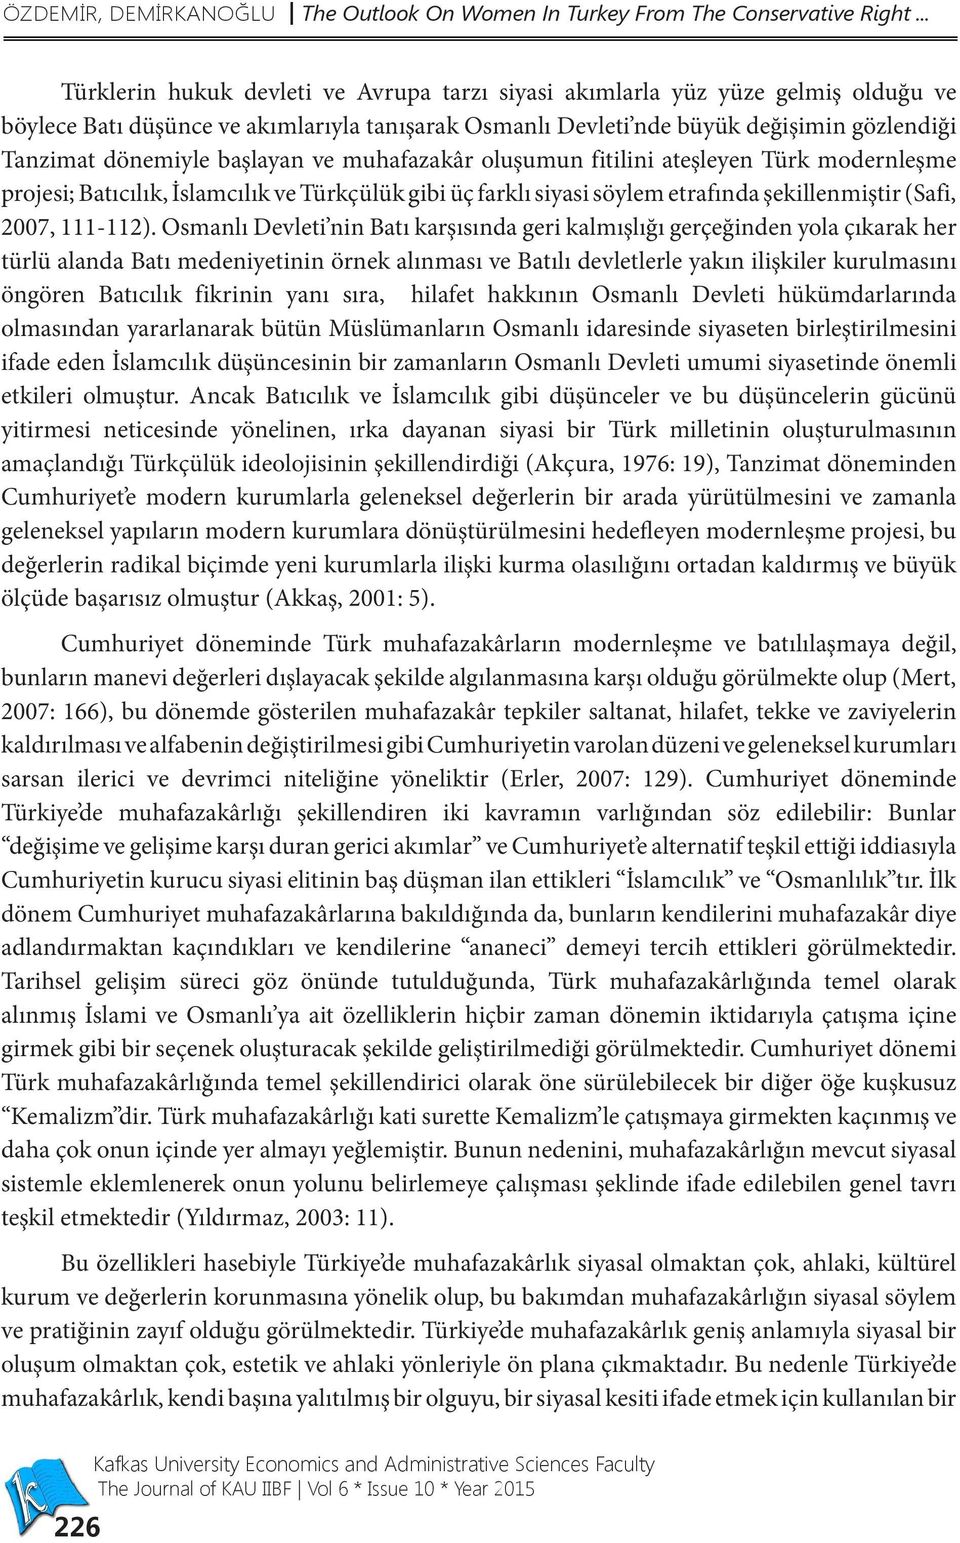 başlayan ve muhafazakâr oluşumun fitilini ateşleyen Türk modernleşme projesi; Batıcılık, İslamcılık ve Türkçülük gibi üç farklı siyasi söylem etrafında şekillenmiştir (Safi, 2007, 111-112).